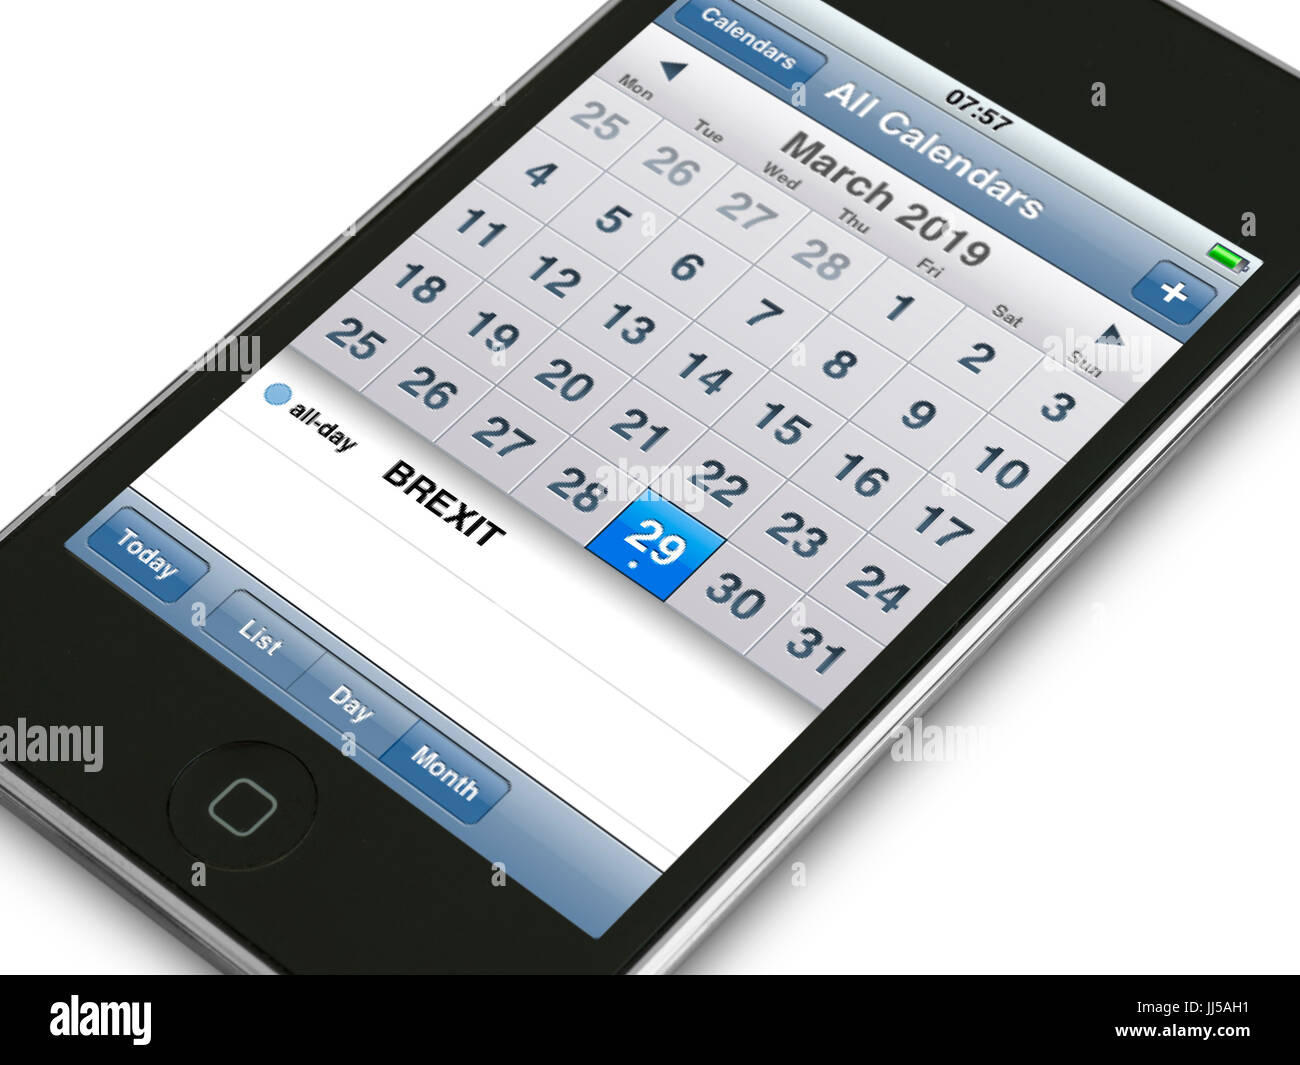 Dispositivo de telefonía móvil que muestra el calendario de eventos diario Brexit fecha cuando el Reino Unido se debe dejar a la UE La Unión Europea ("día de la independencia") Foto de stock